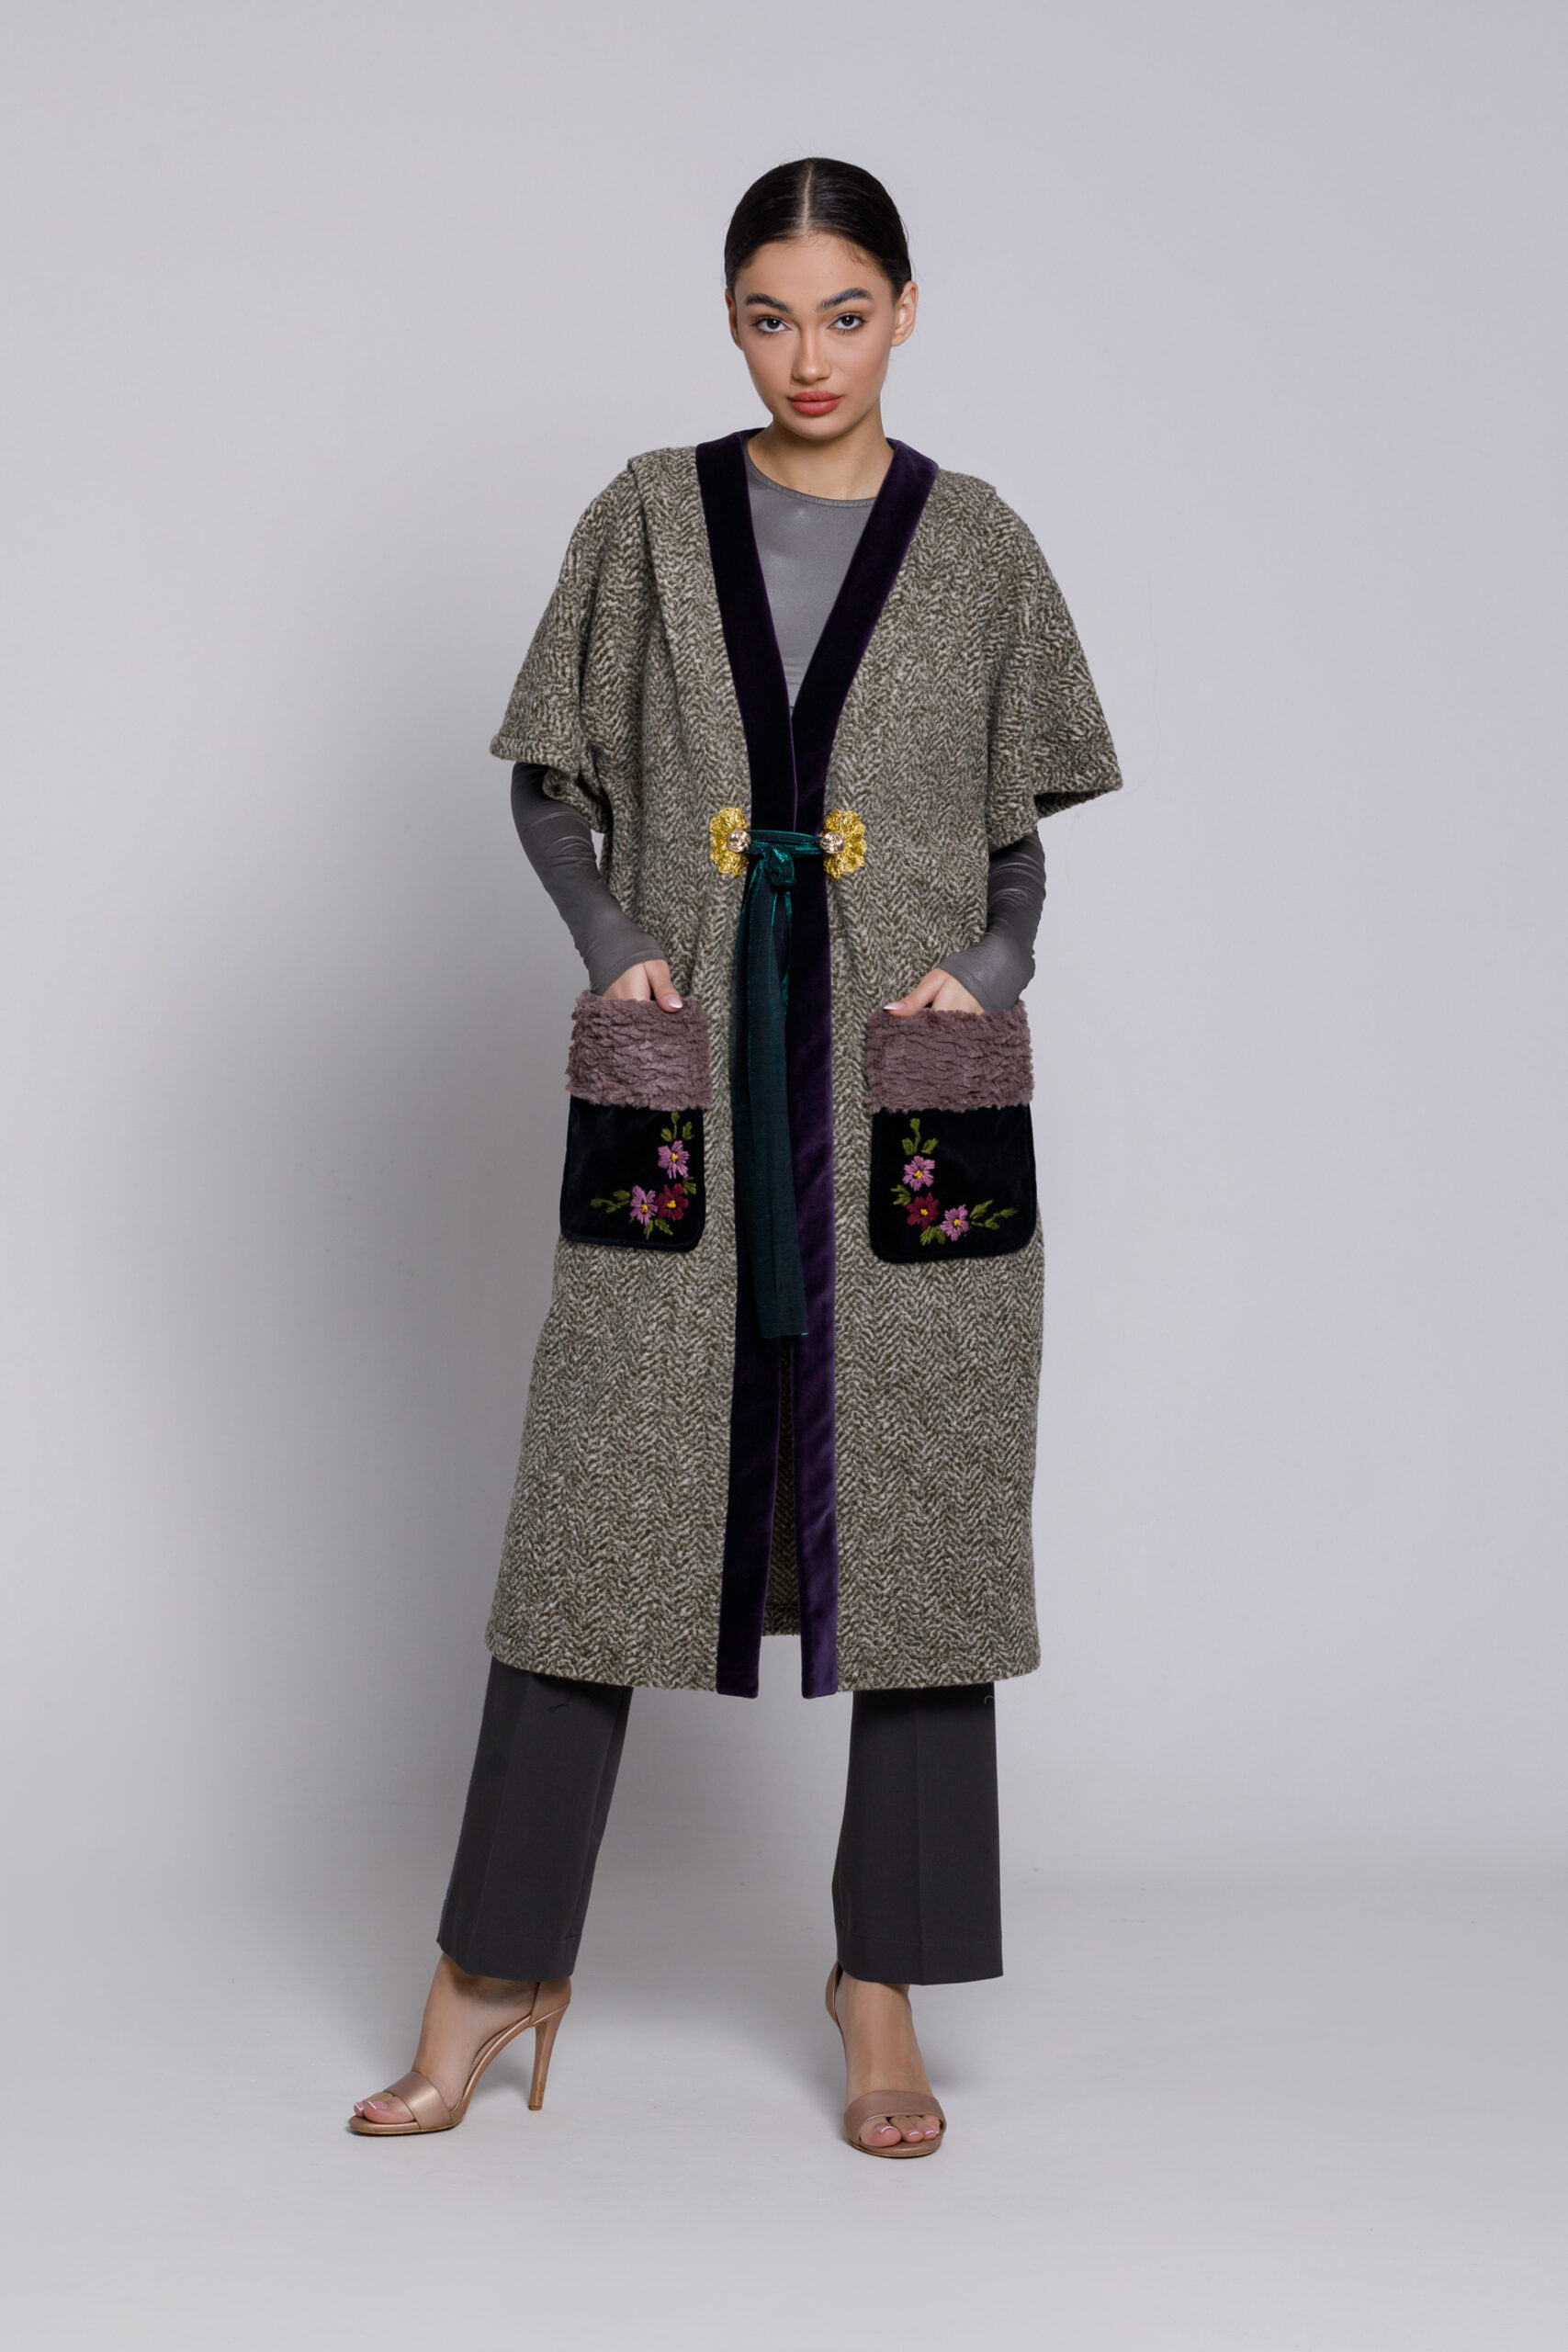 Kimono RAIN din stofa cu buzunare de catifea. Materiale naturale, design unicat, cu broderie si aplicatii handmade